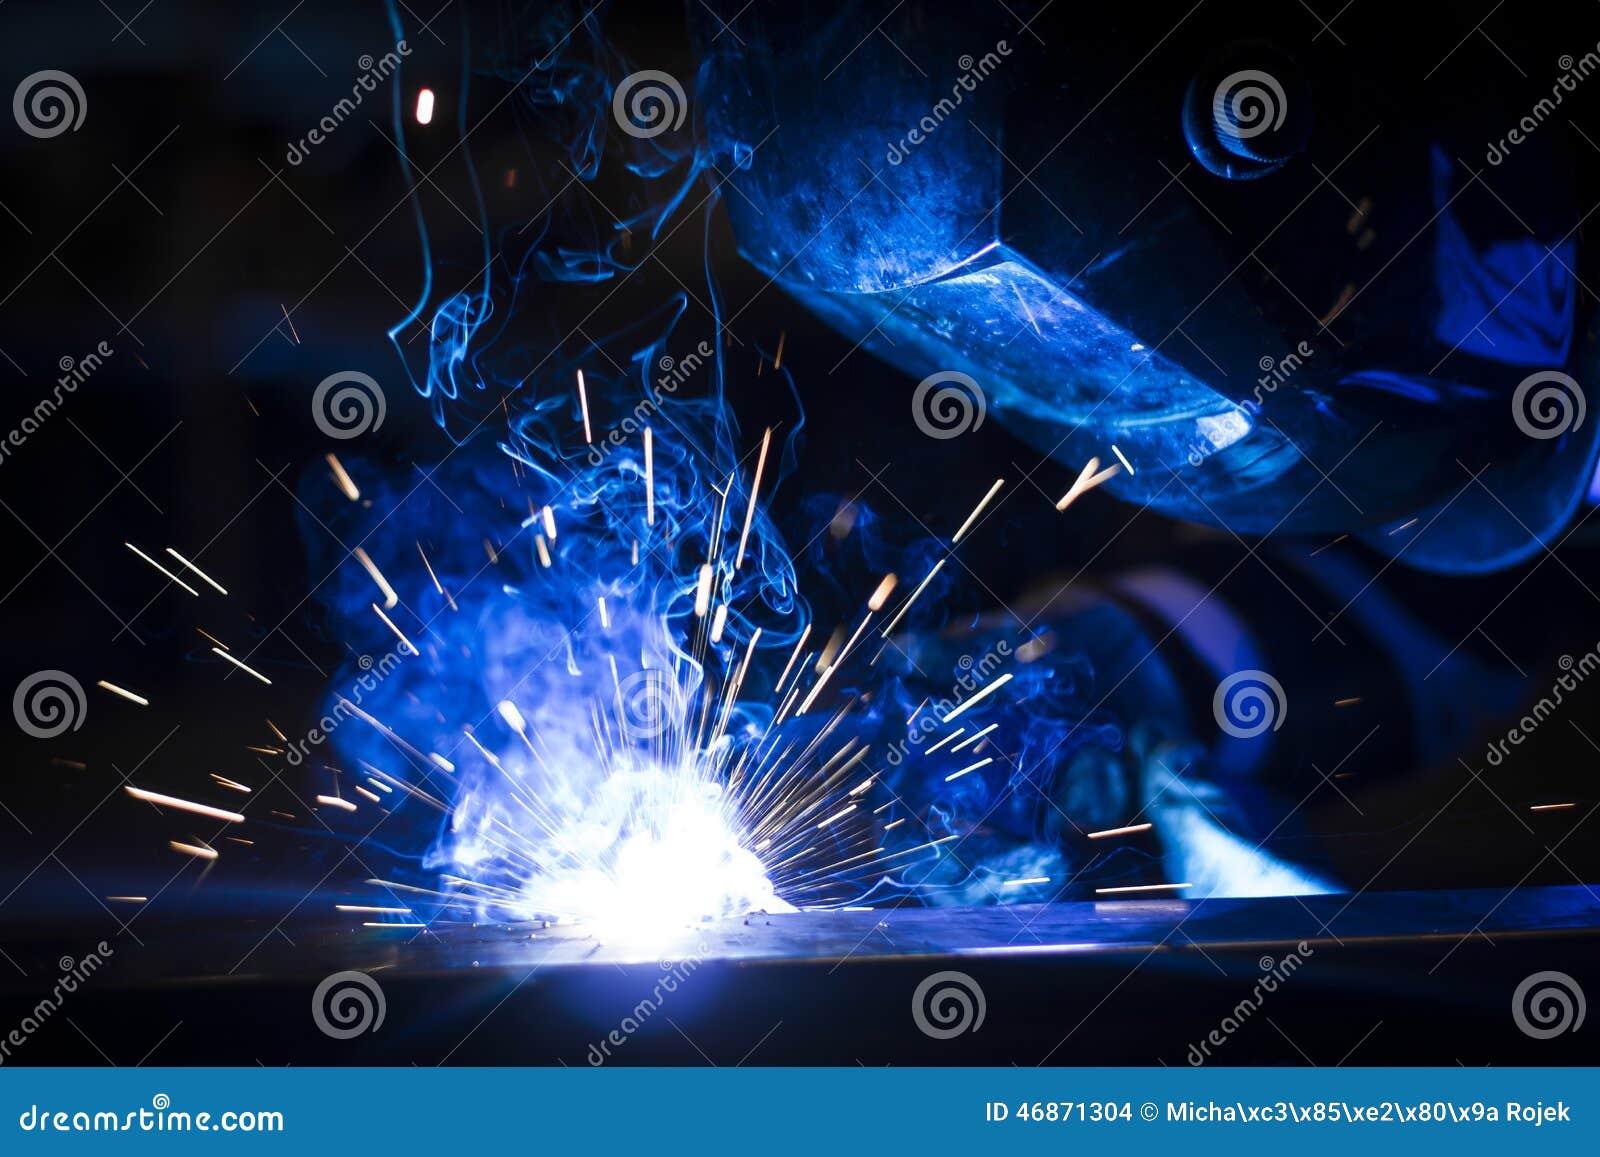 worker welding using mig/mag.